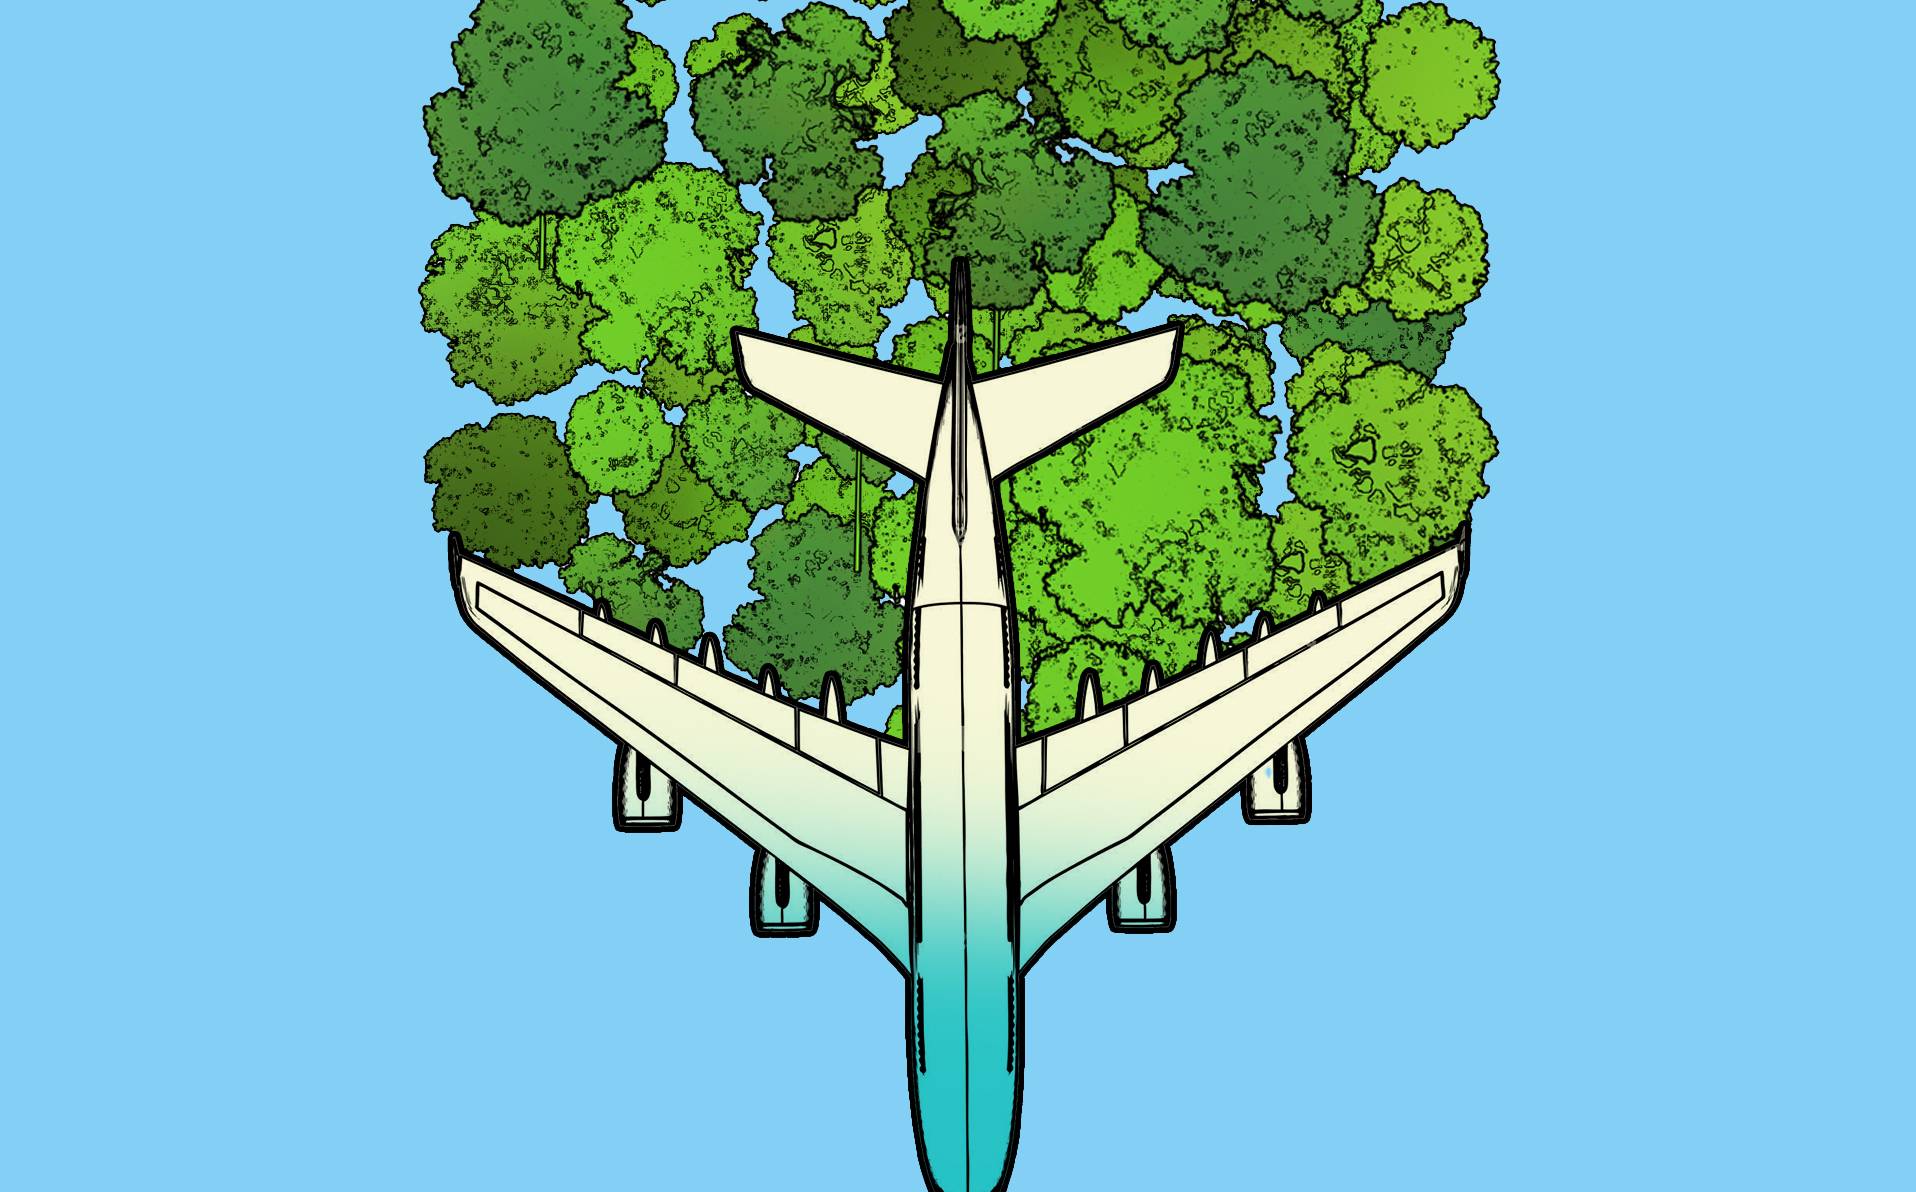 illustration de la question "L'avion peut-il devenir propre?"